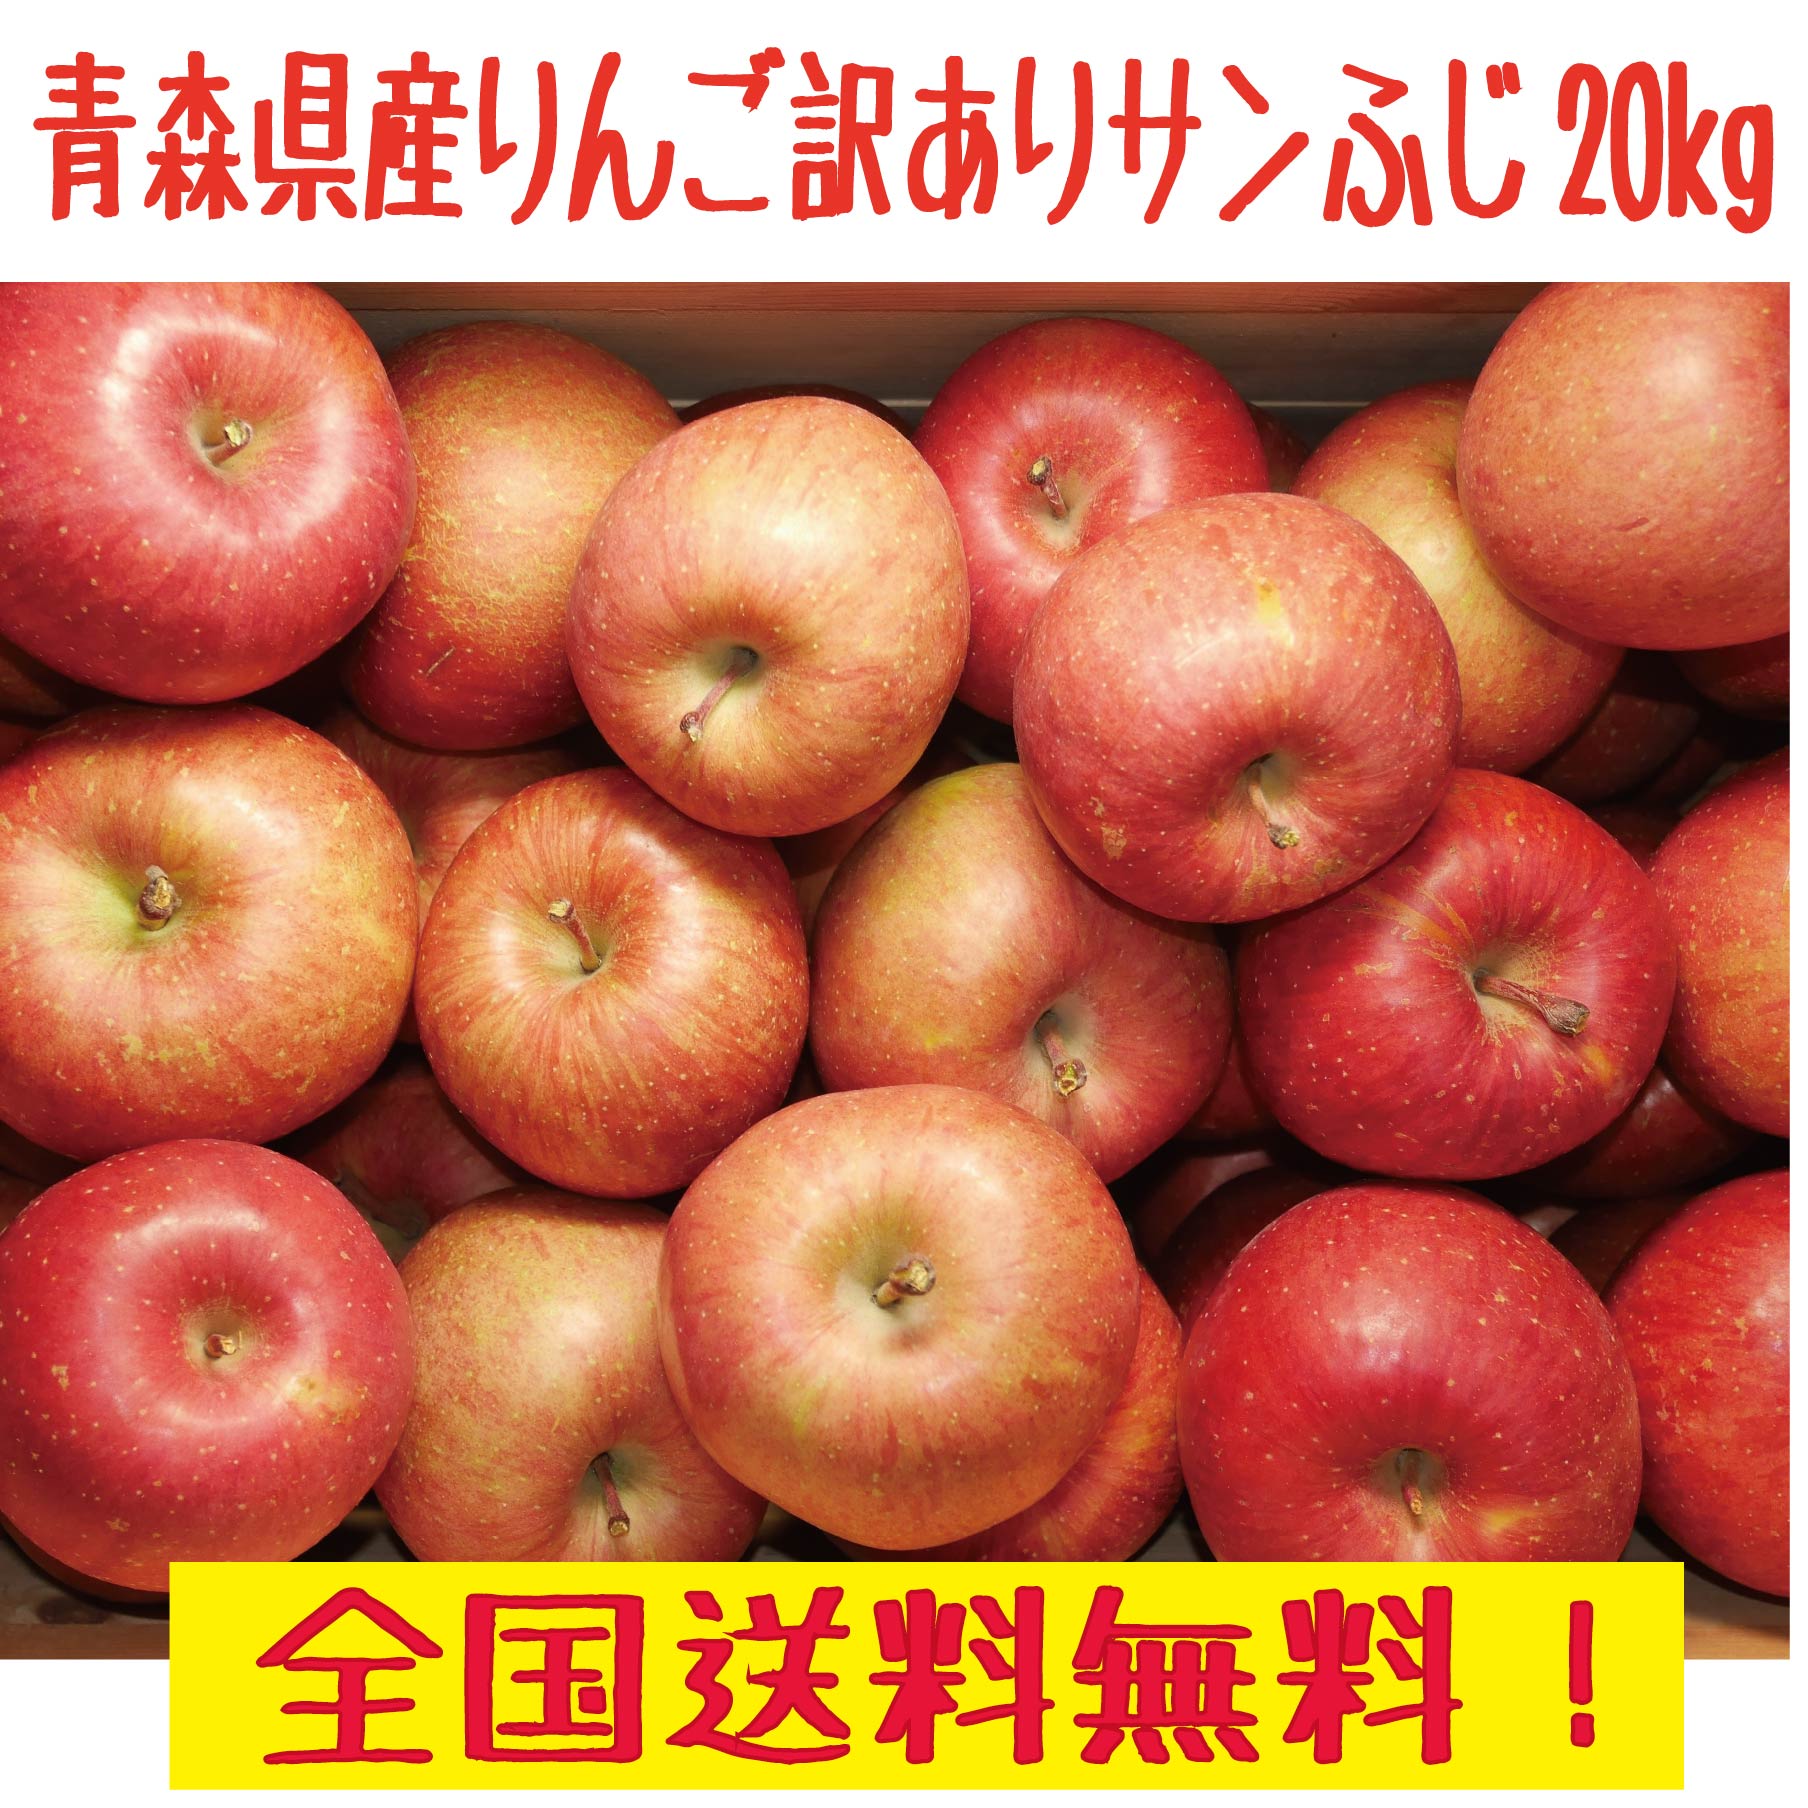 青森県産りんご トキ ミニサイズ コンパクトボックス